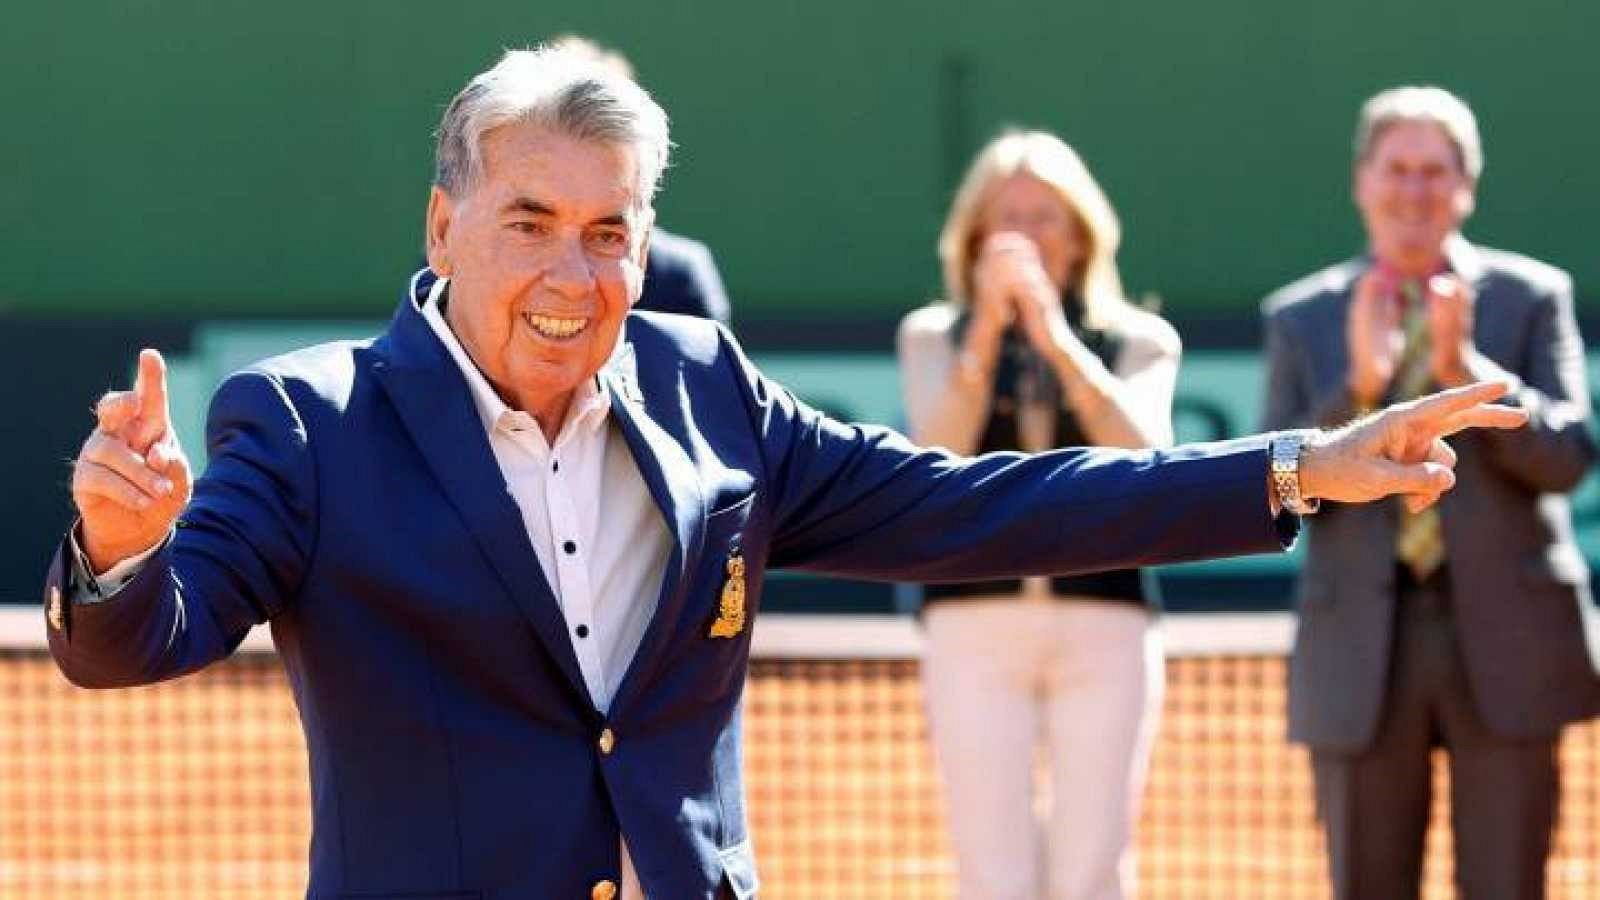 Muere Manolo Santana, leyenda del tenis español